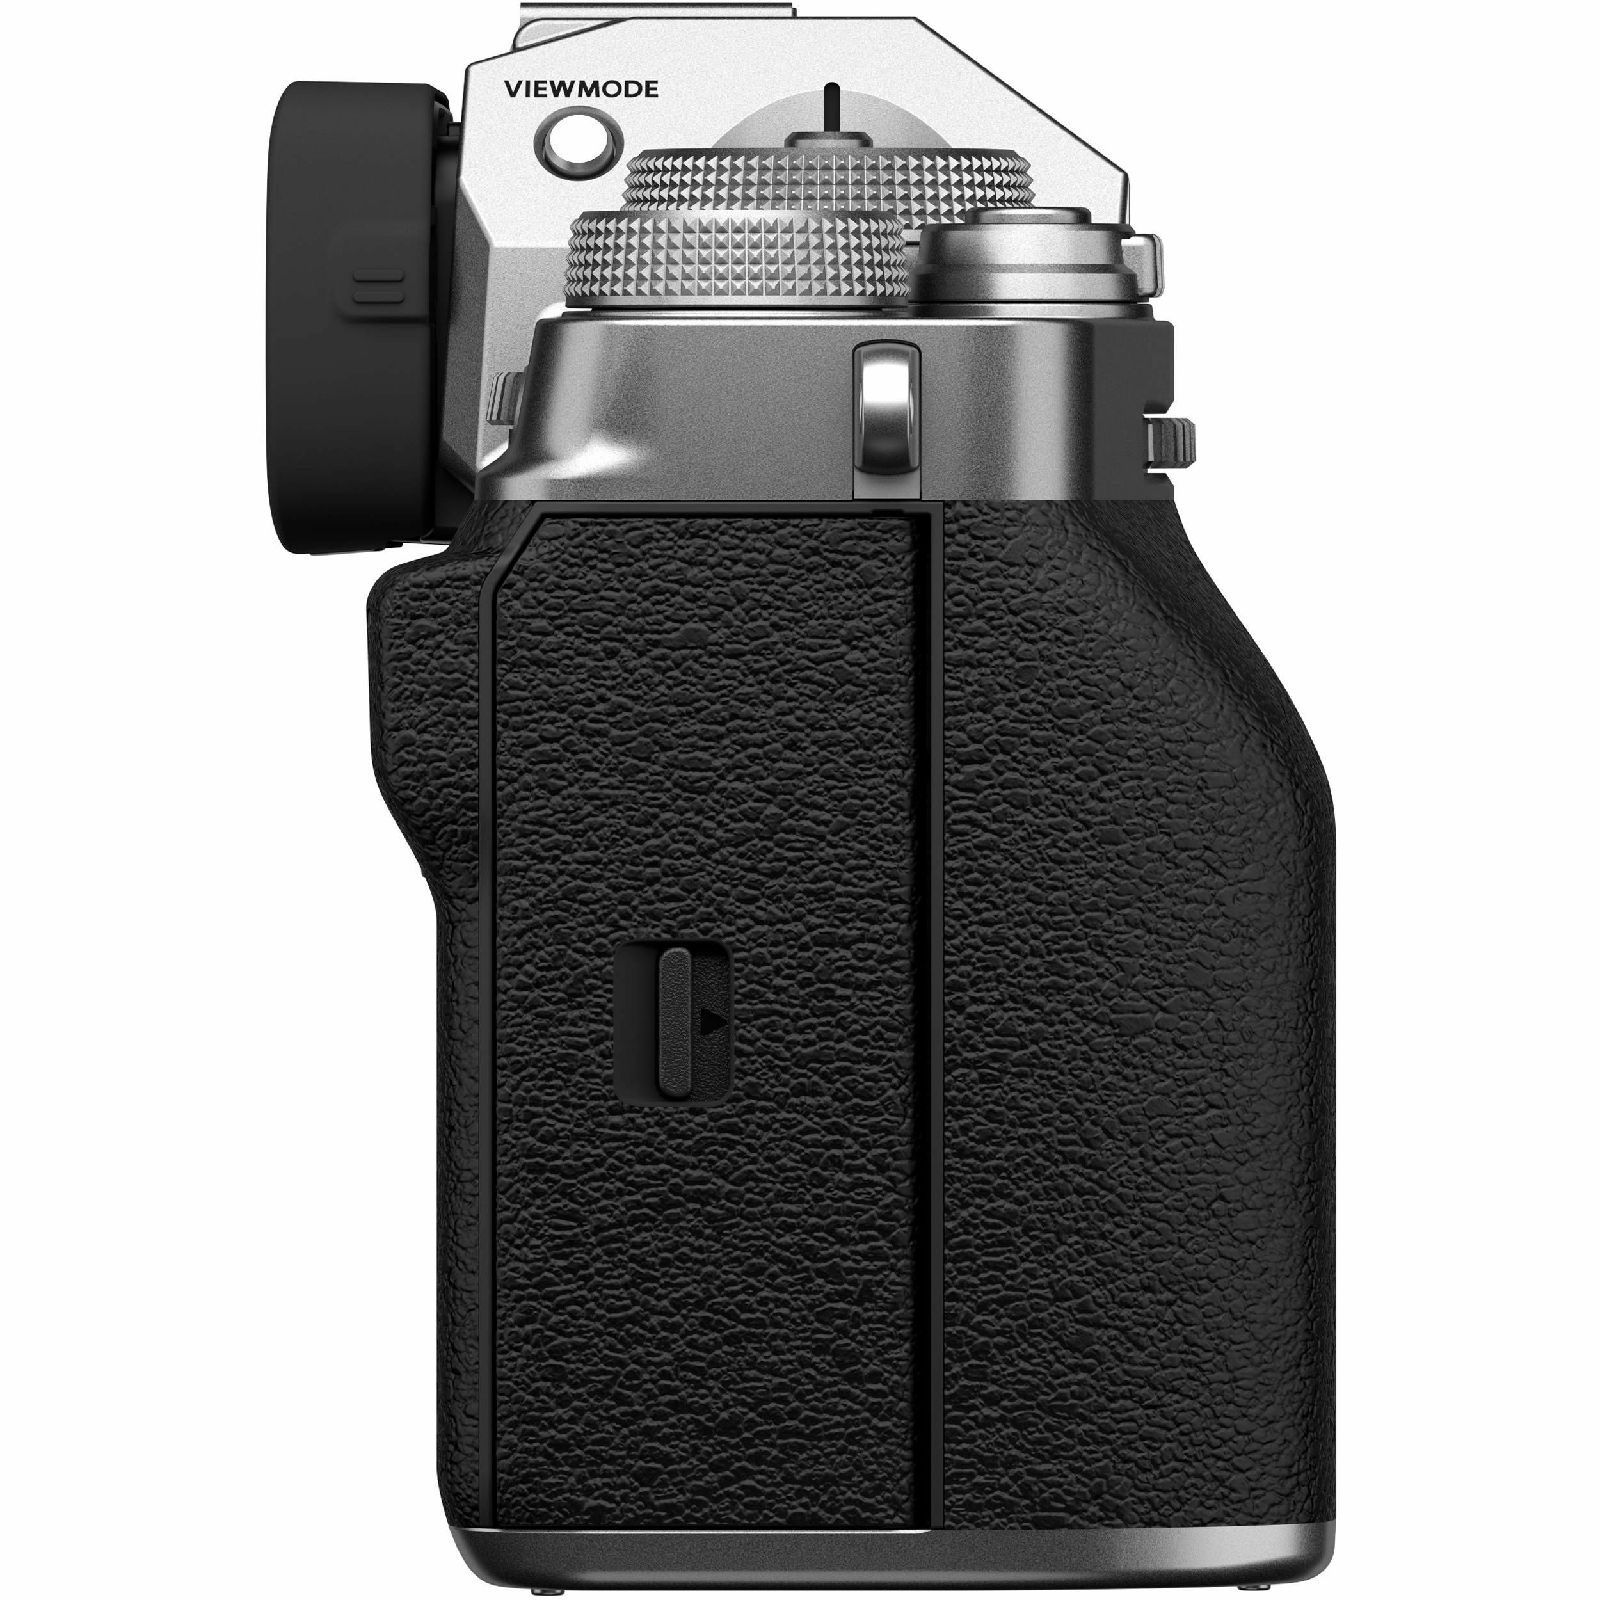 Fujifilm X-T4 + XF 18-55mm f/2.8-4 R LM OIS Silver KIT Srebreni Fuji digitalni mirrorless fotoaparat s objektivom (16650883)